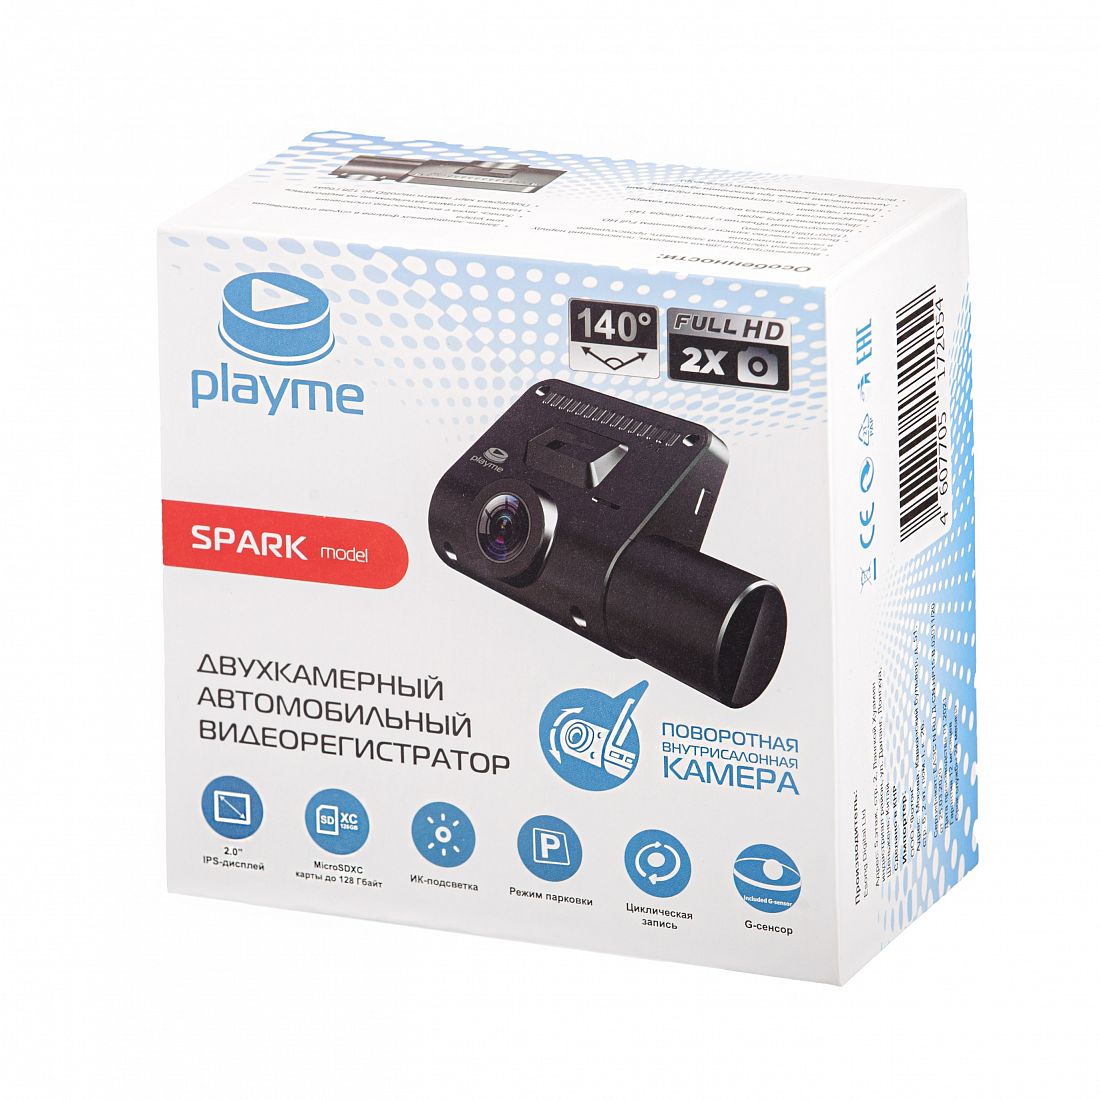 картинка Playme Spark от магазина Playme